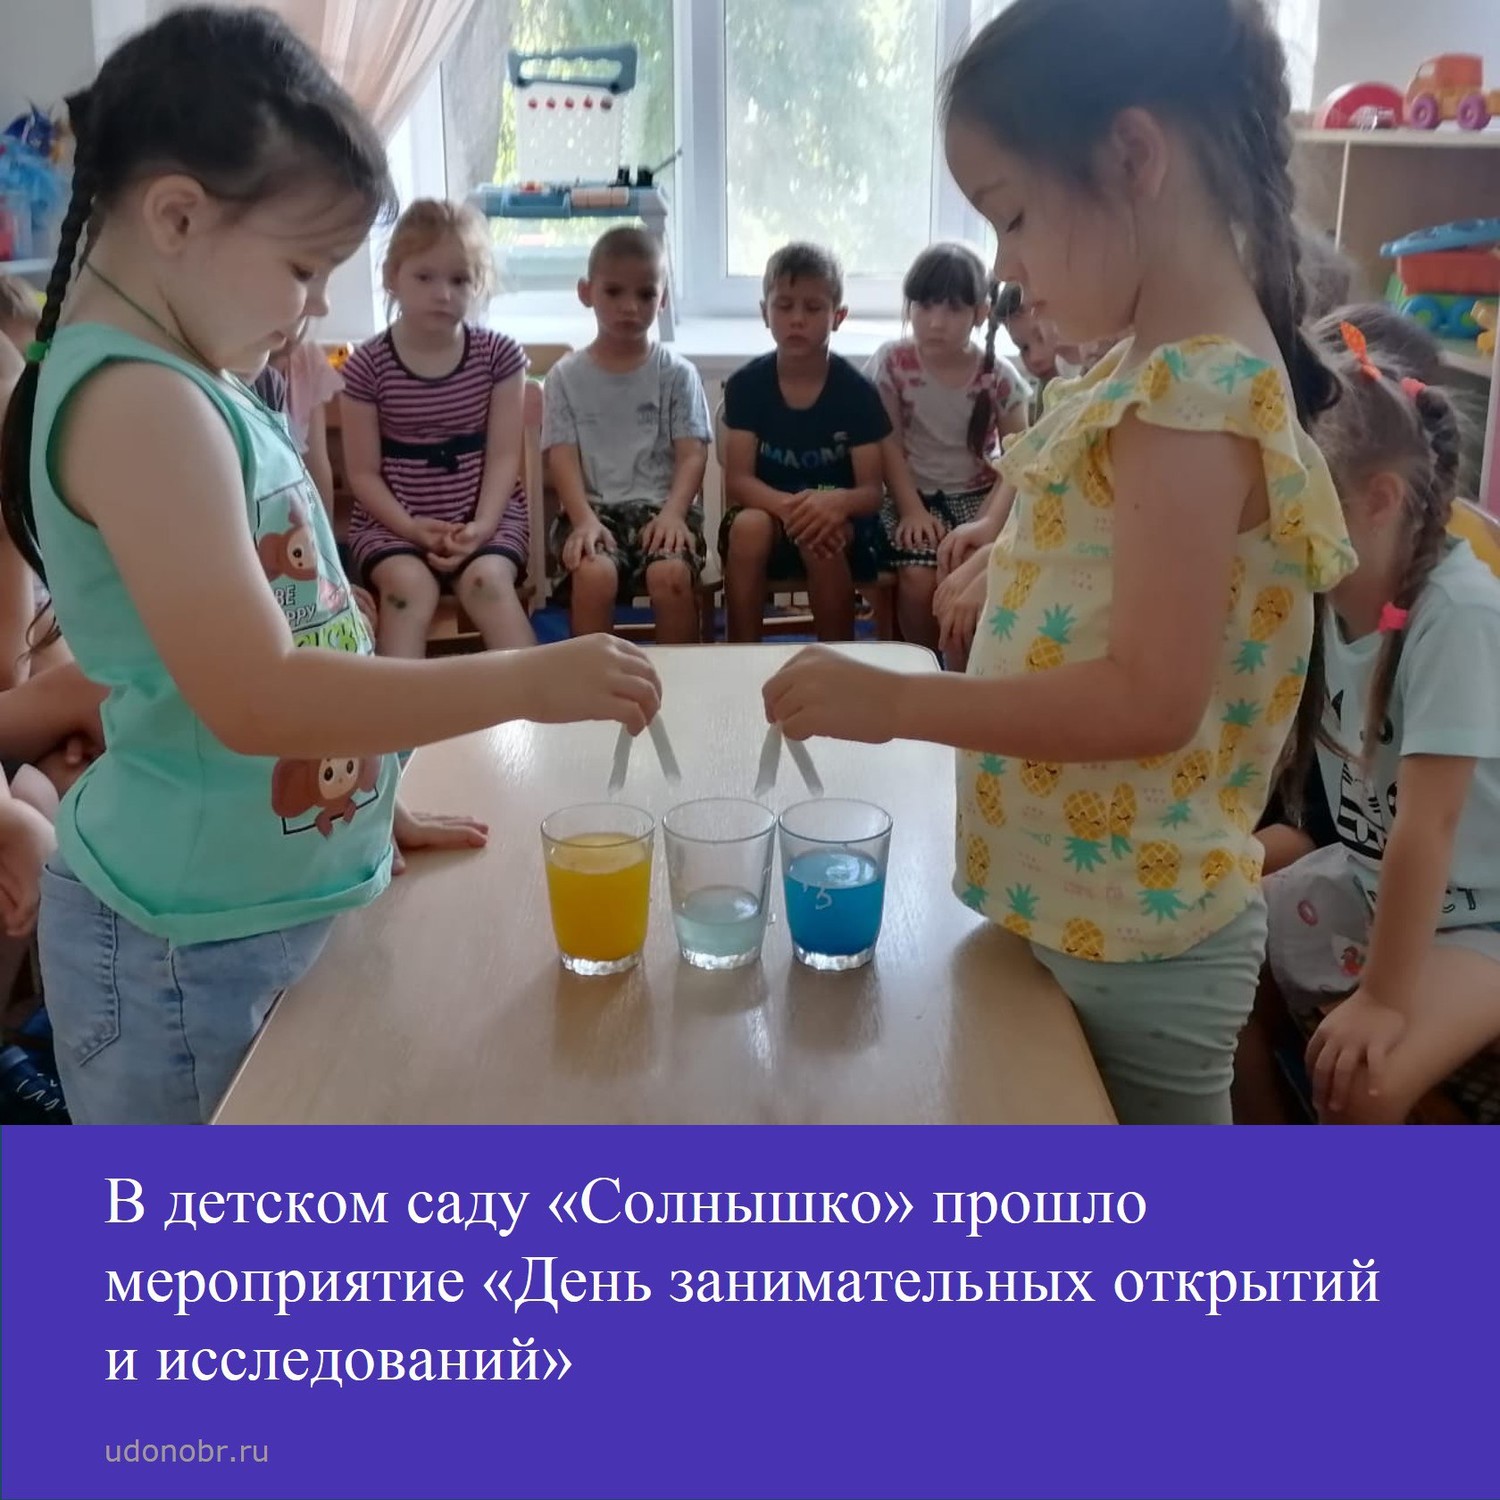 В детском саду «Солнышко» прошло мероприятие «День занимательных открытий и исследований»